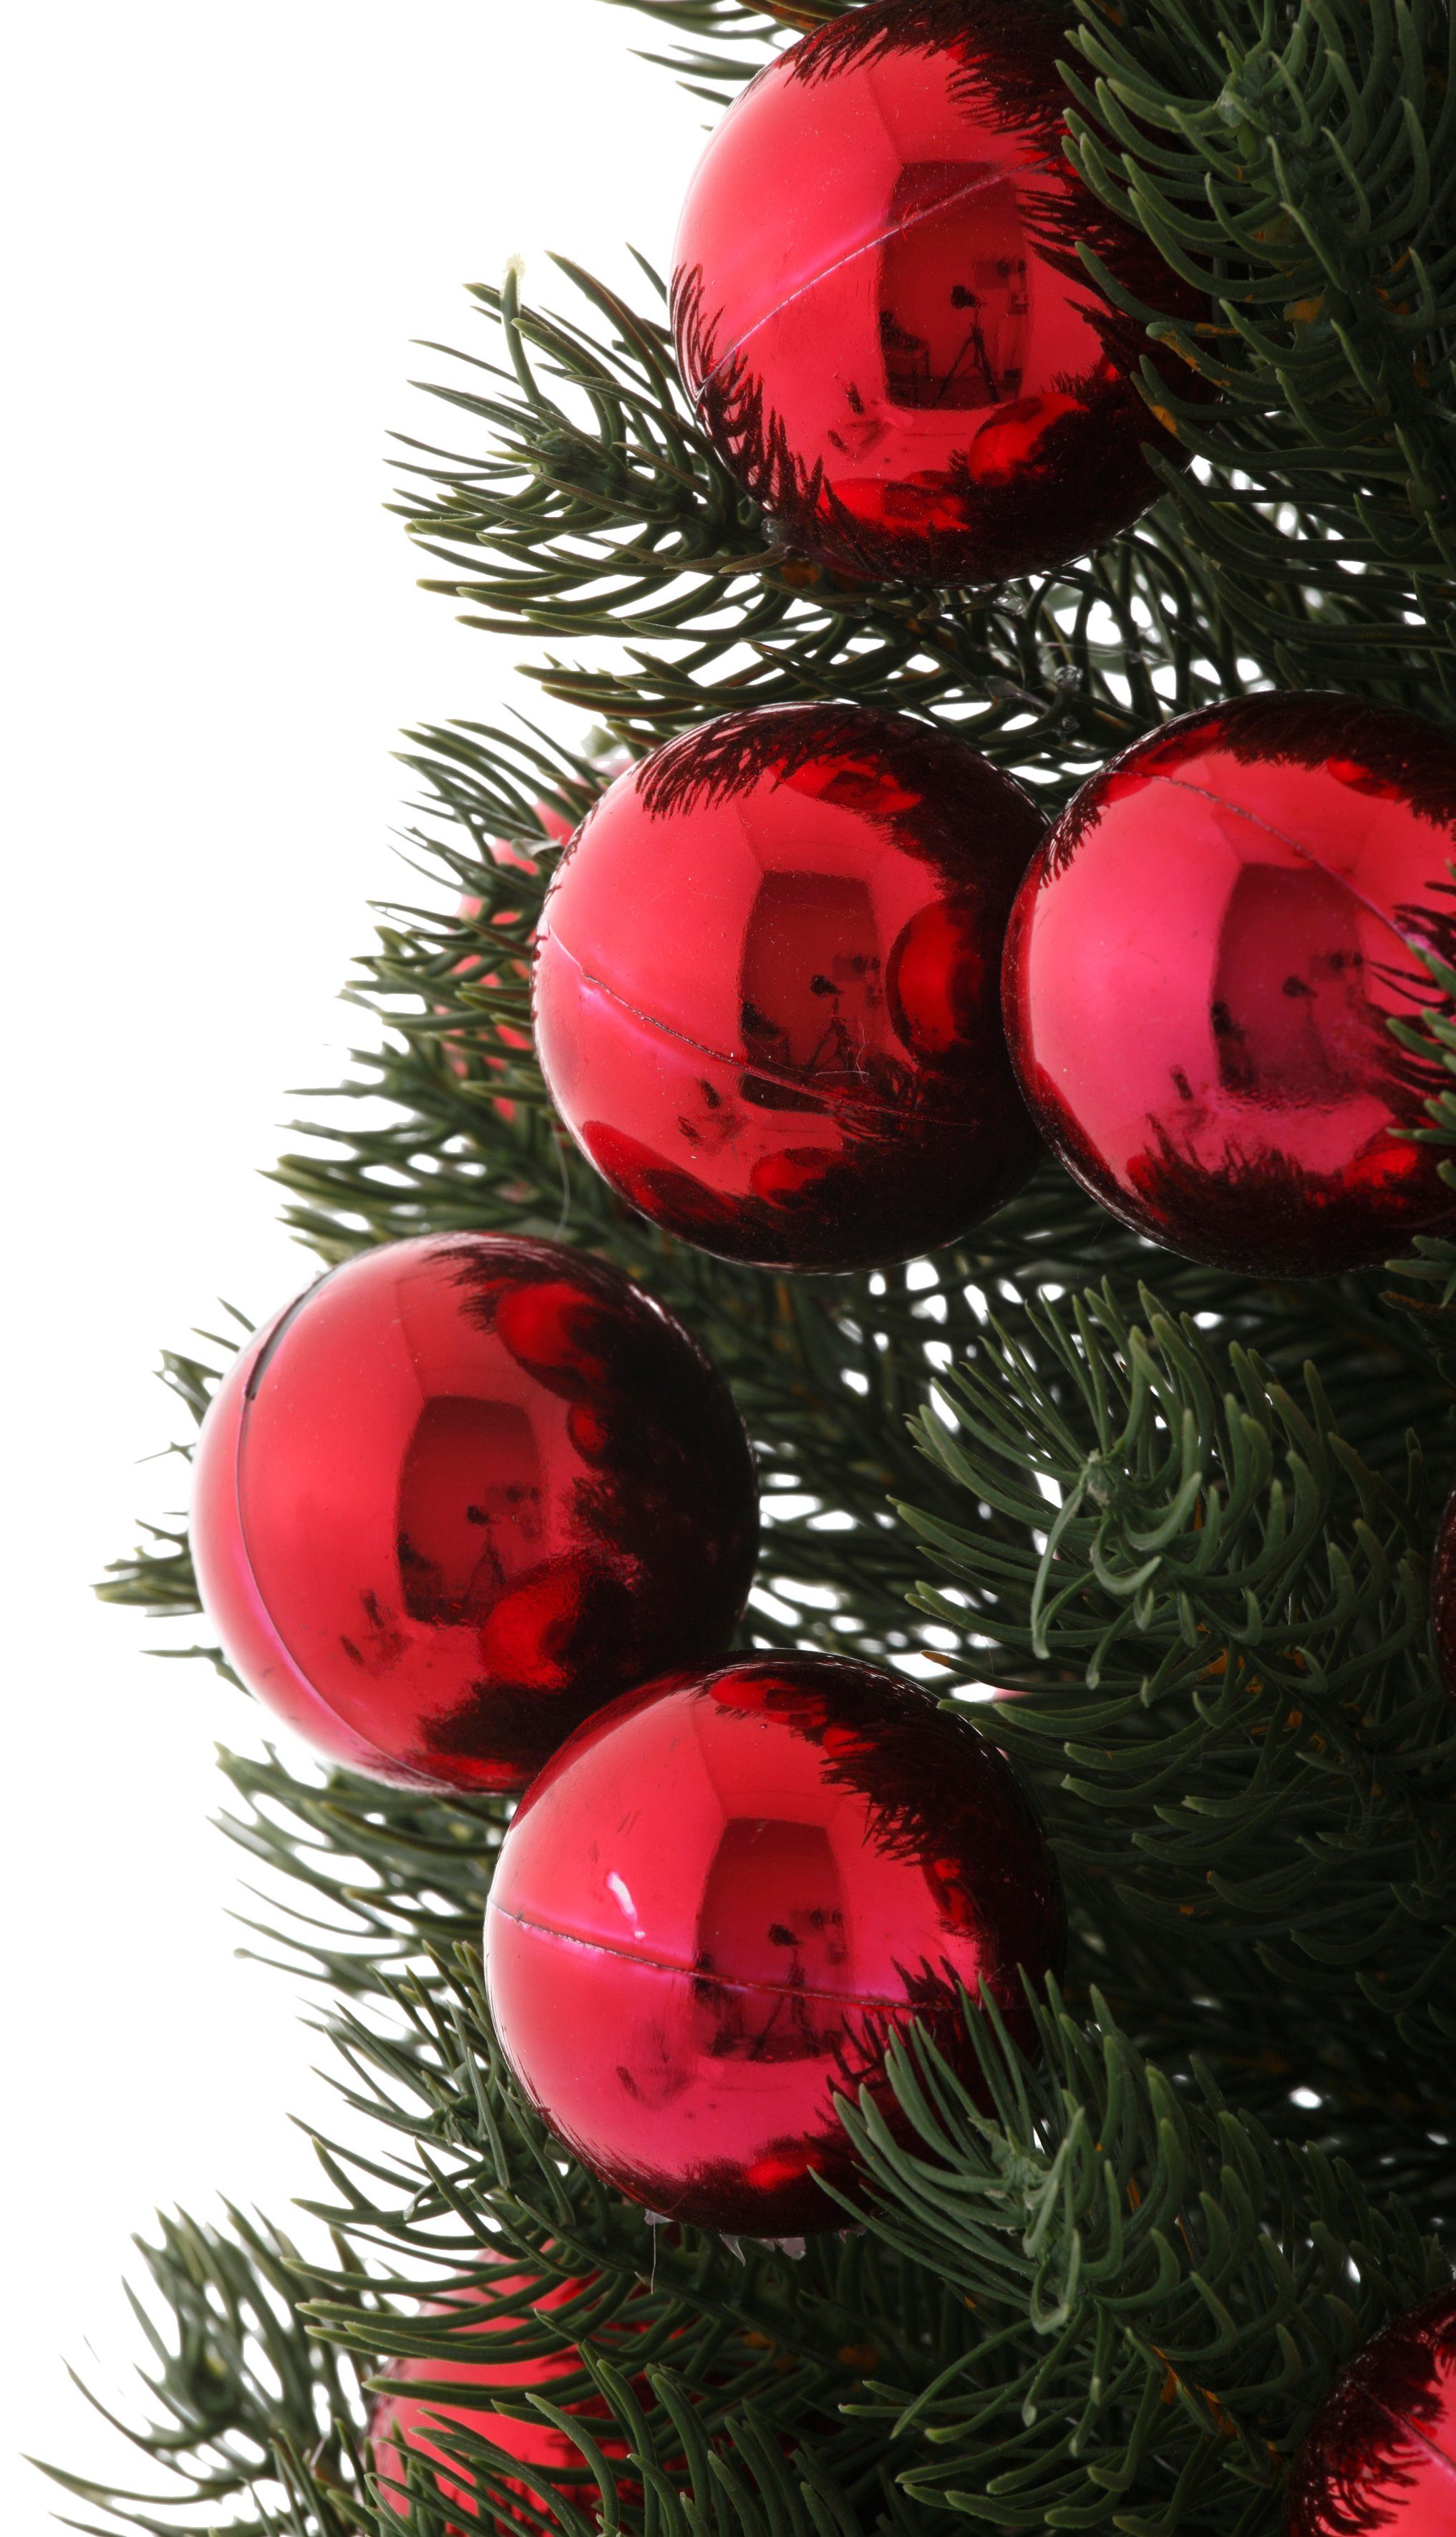 Accessoires Weihnachtsdeko, Kugeln Myflair künstlicher & Topf, mit Weihnachtsbaum Künstlicher im Christbaum, Möbel Tannenbaum, roten